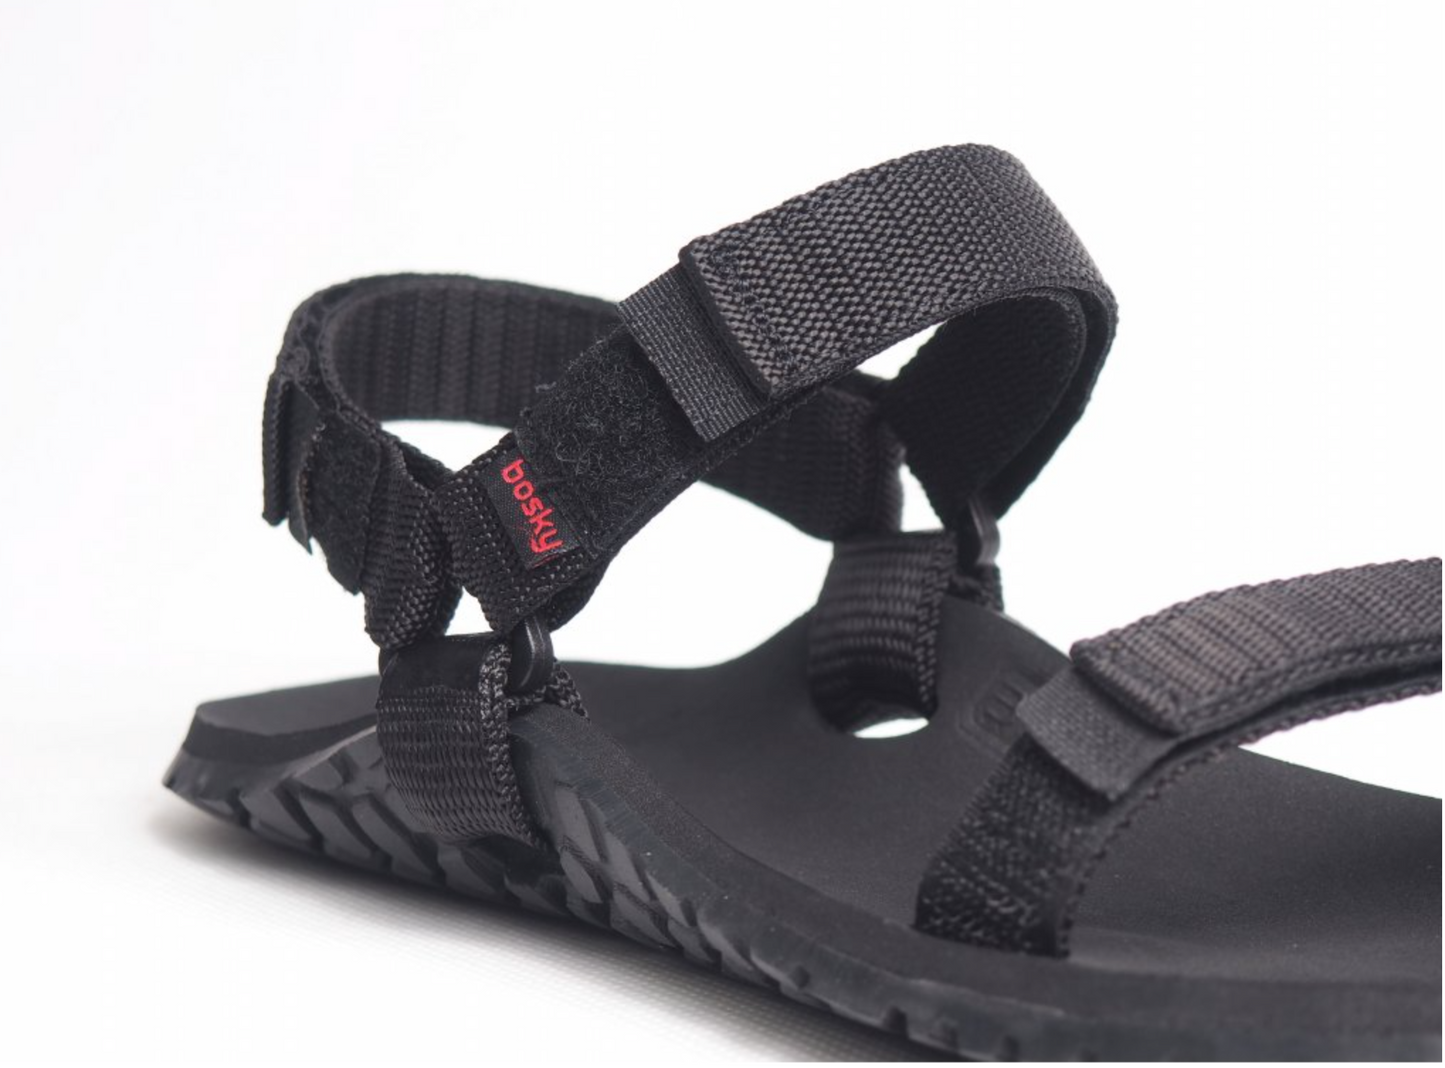 Bosky Enduro 2.0 X barfods sandaler til kvinder og mænd i farven black, detalje